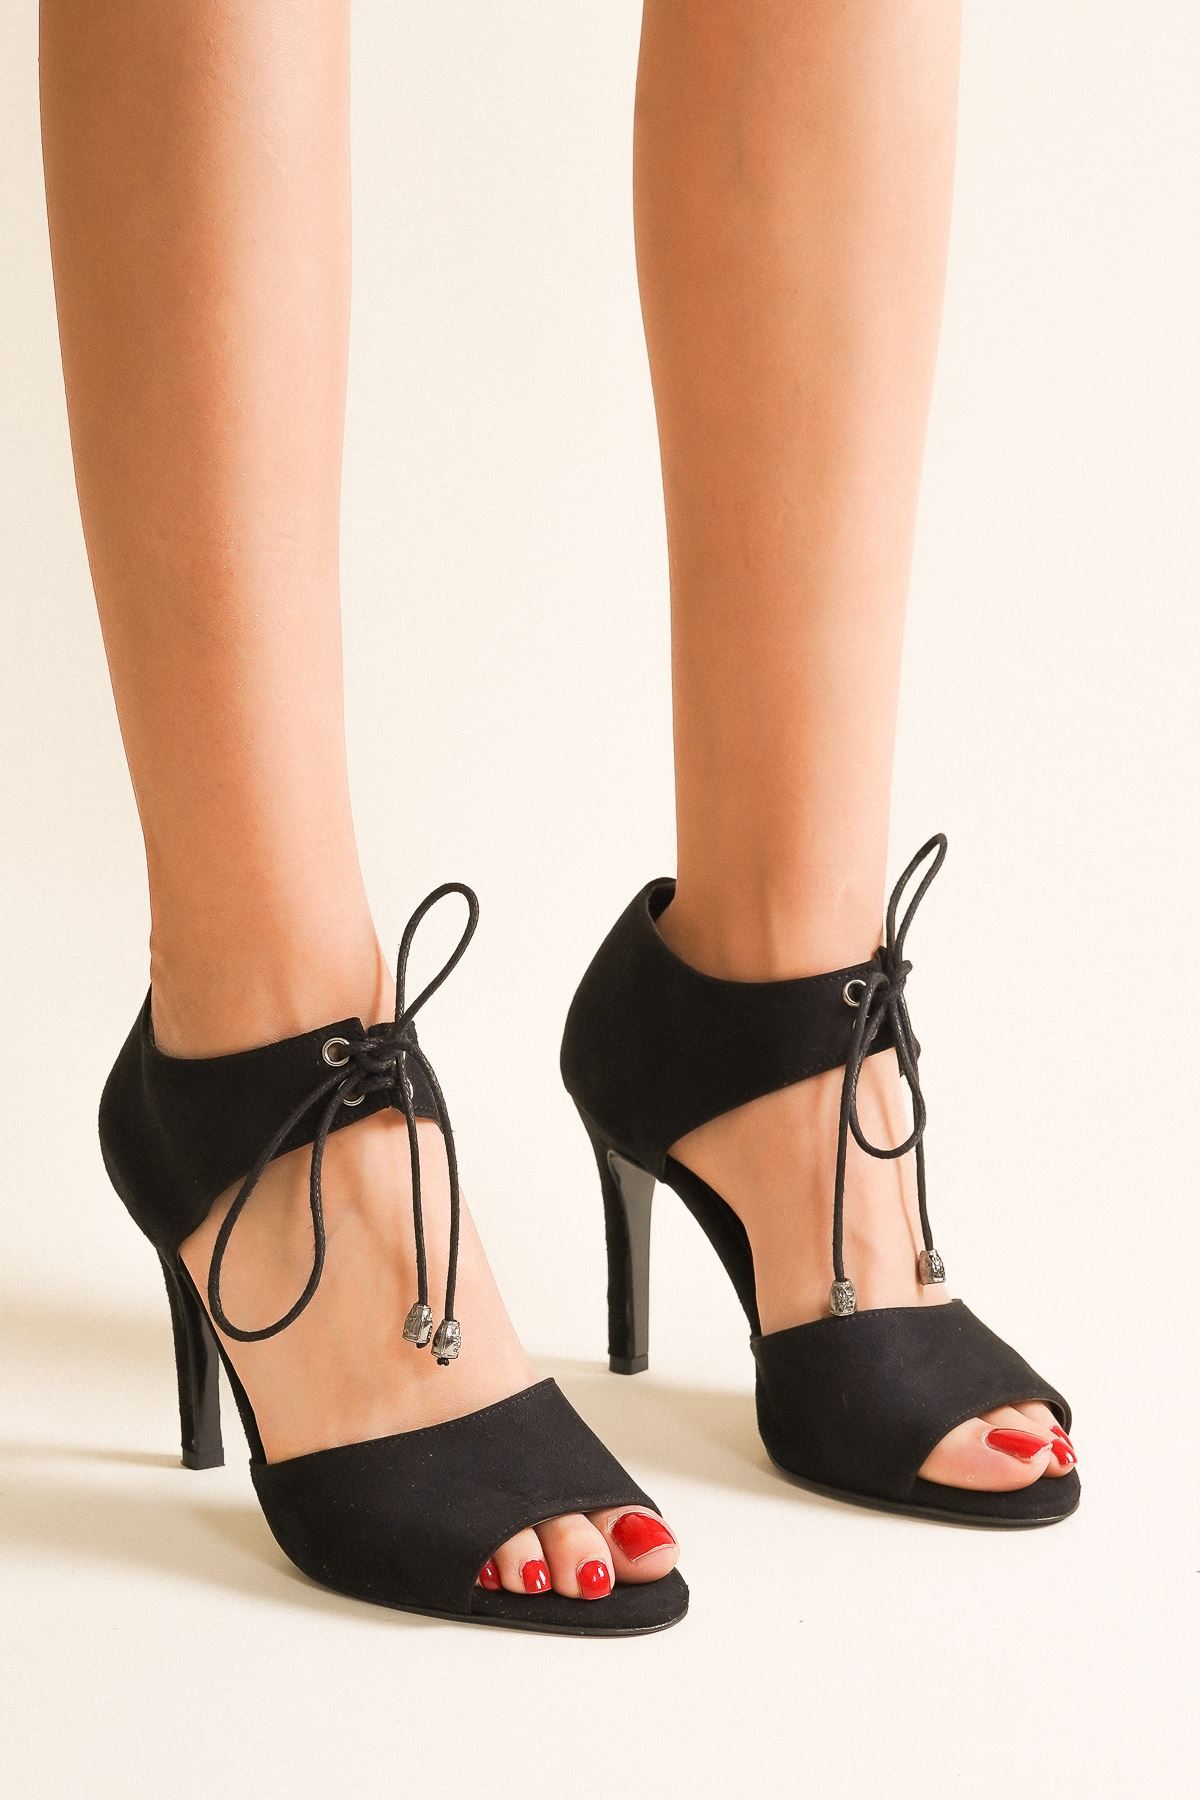 Tosna Siyah Süet Bağcıklı Kadın Topuklu Ayakkabı